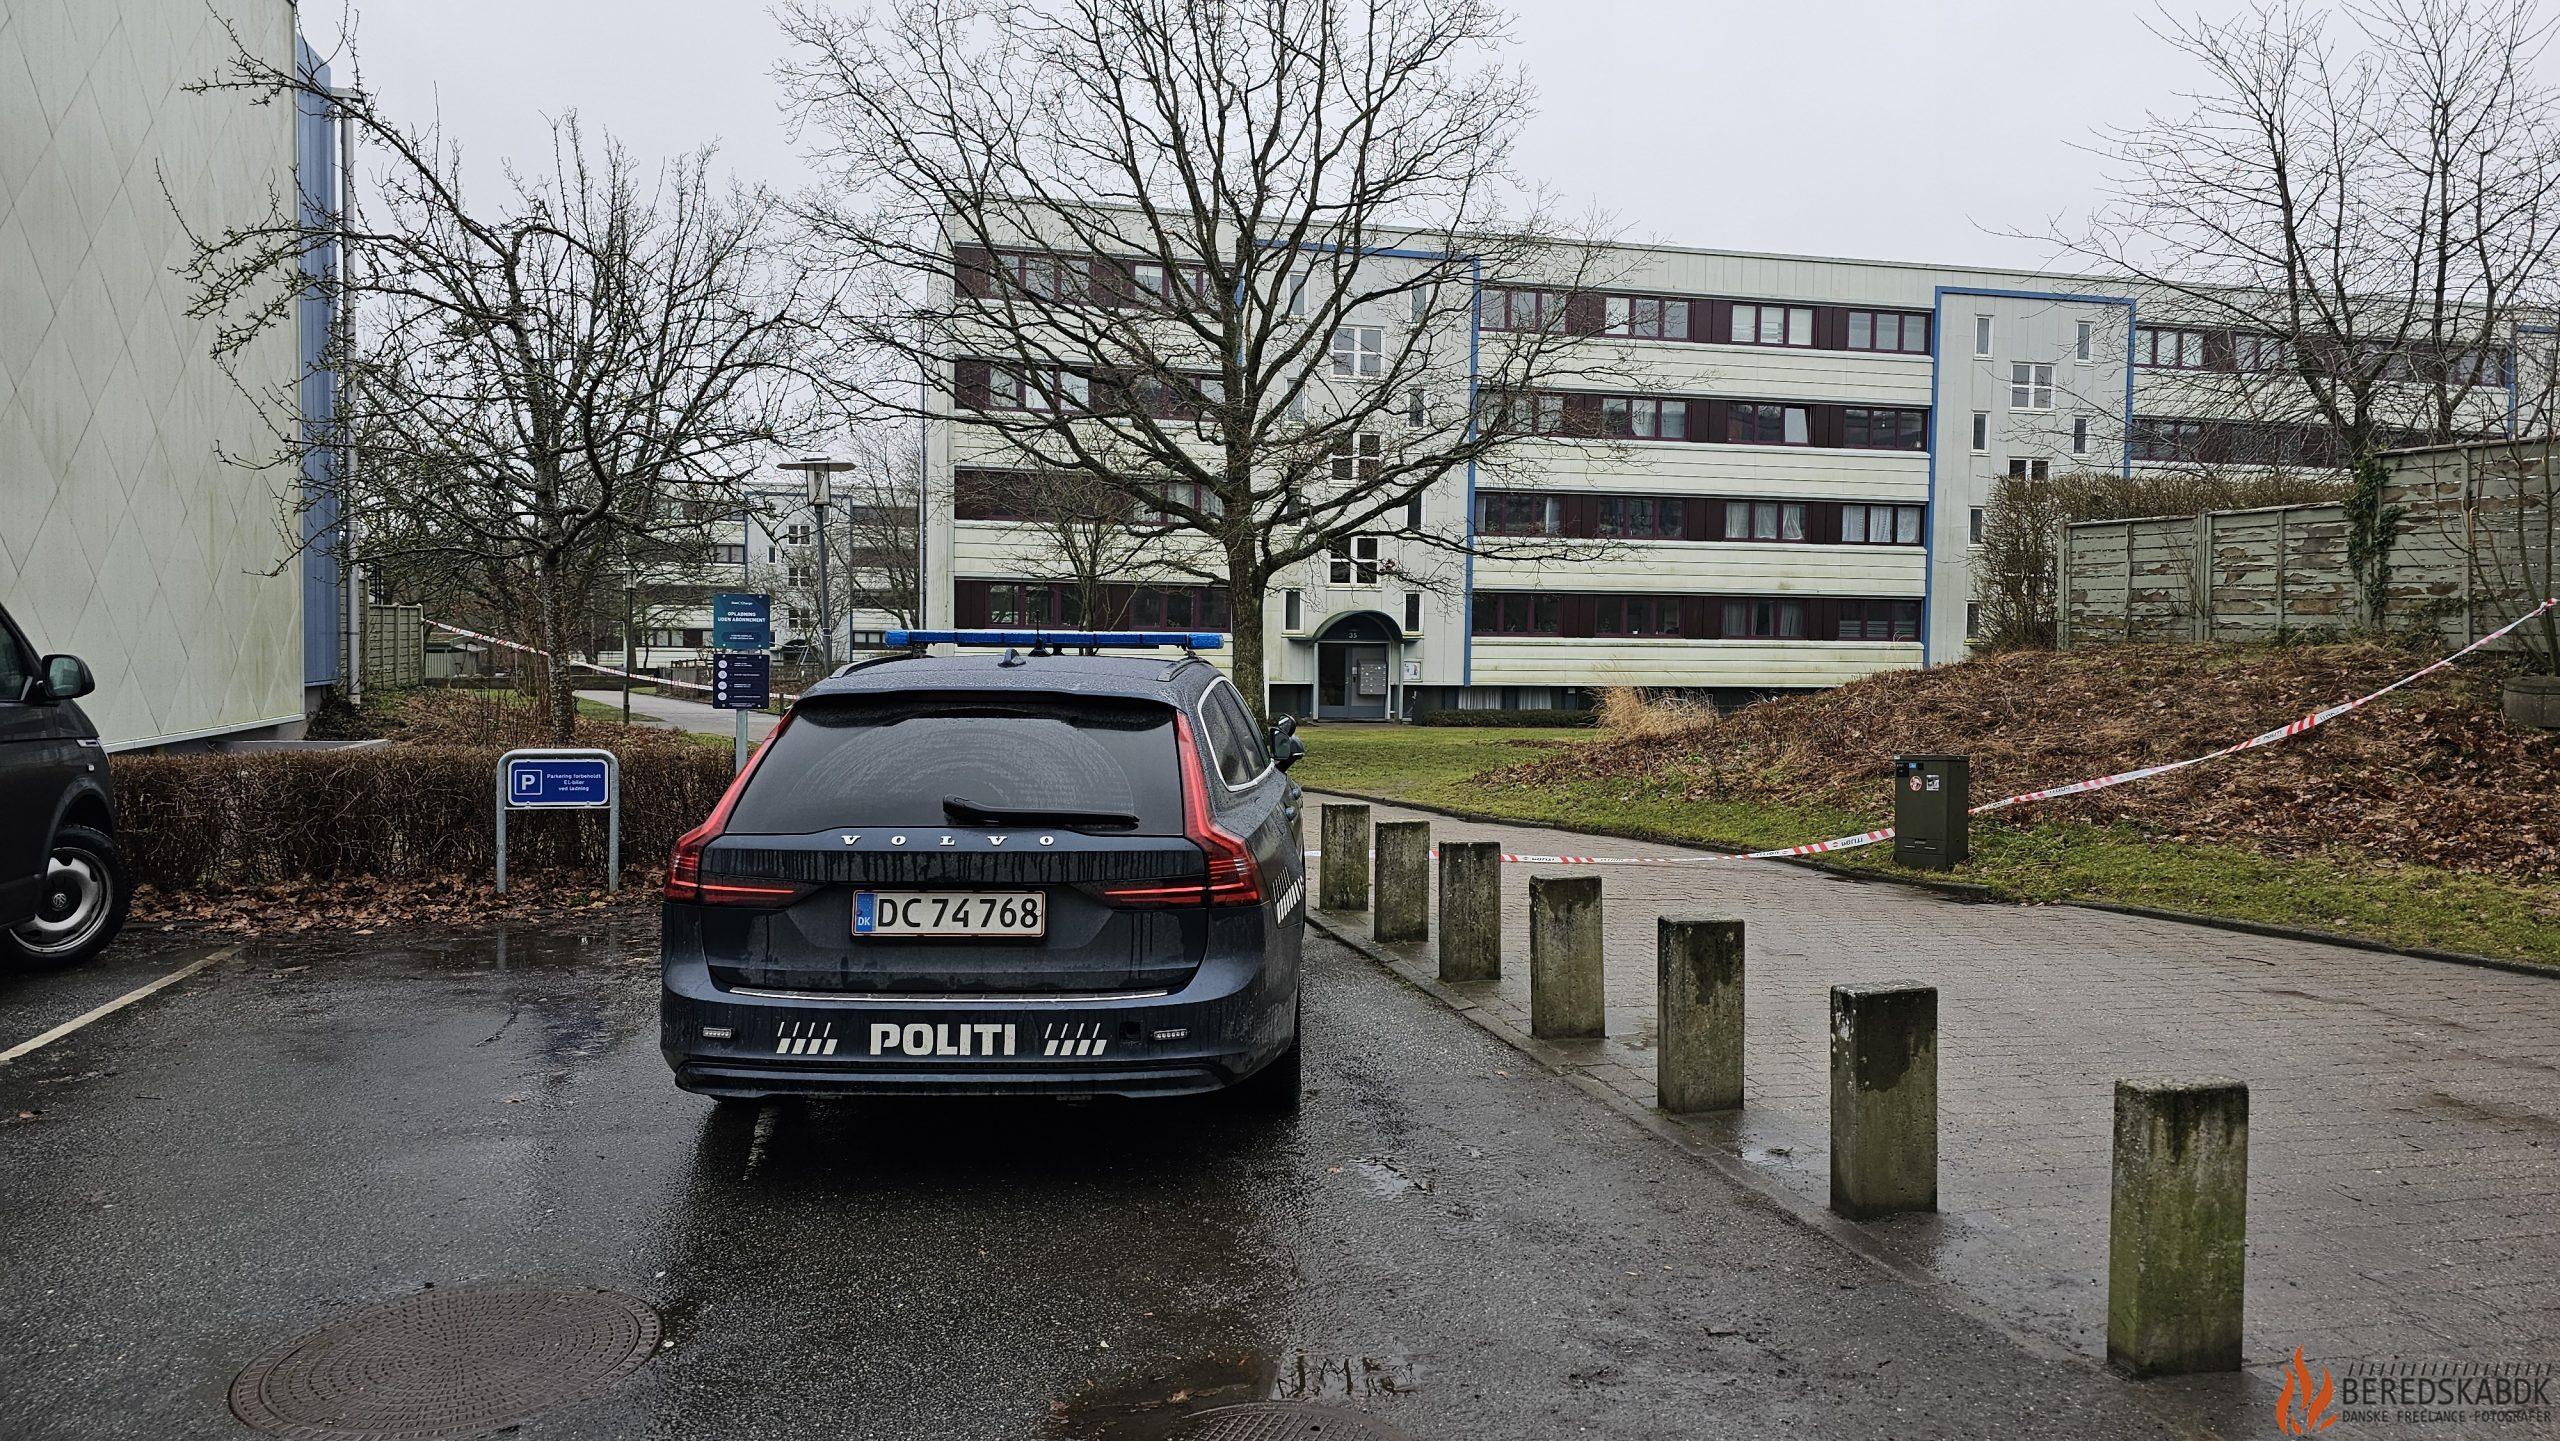 02/02-24 Politiet til stede på Elstedhøj i Lystrup